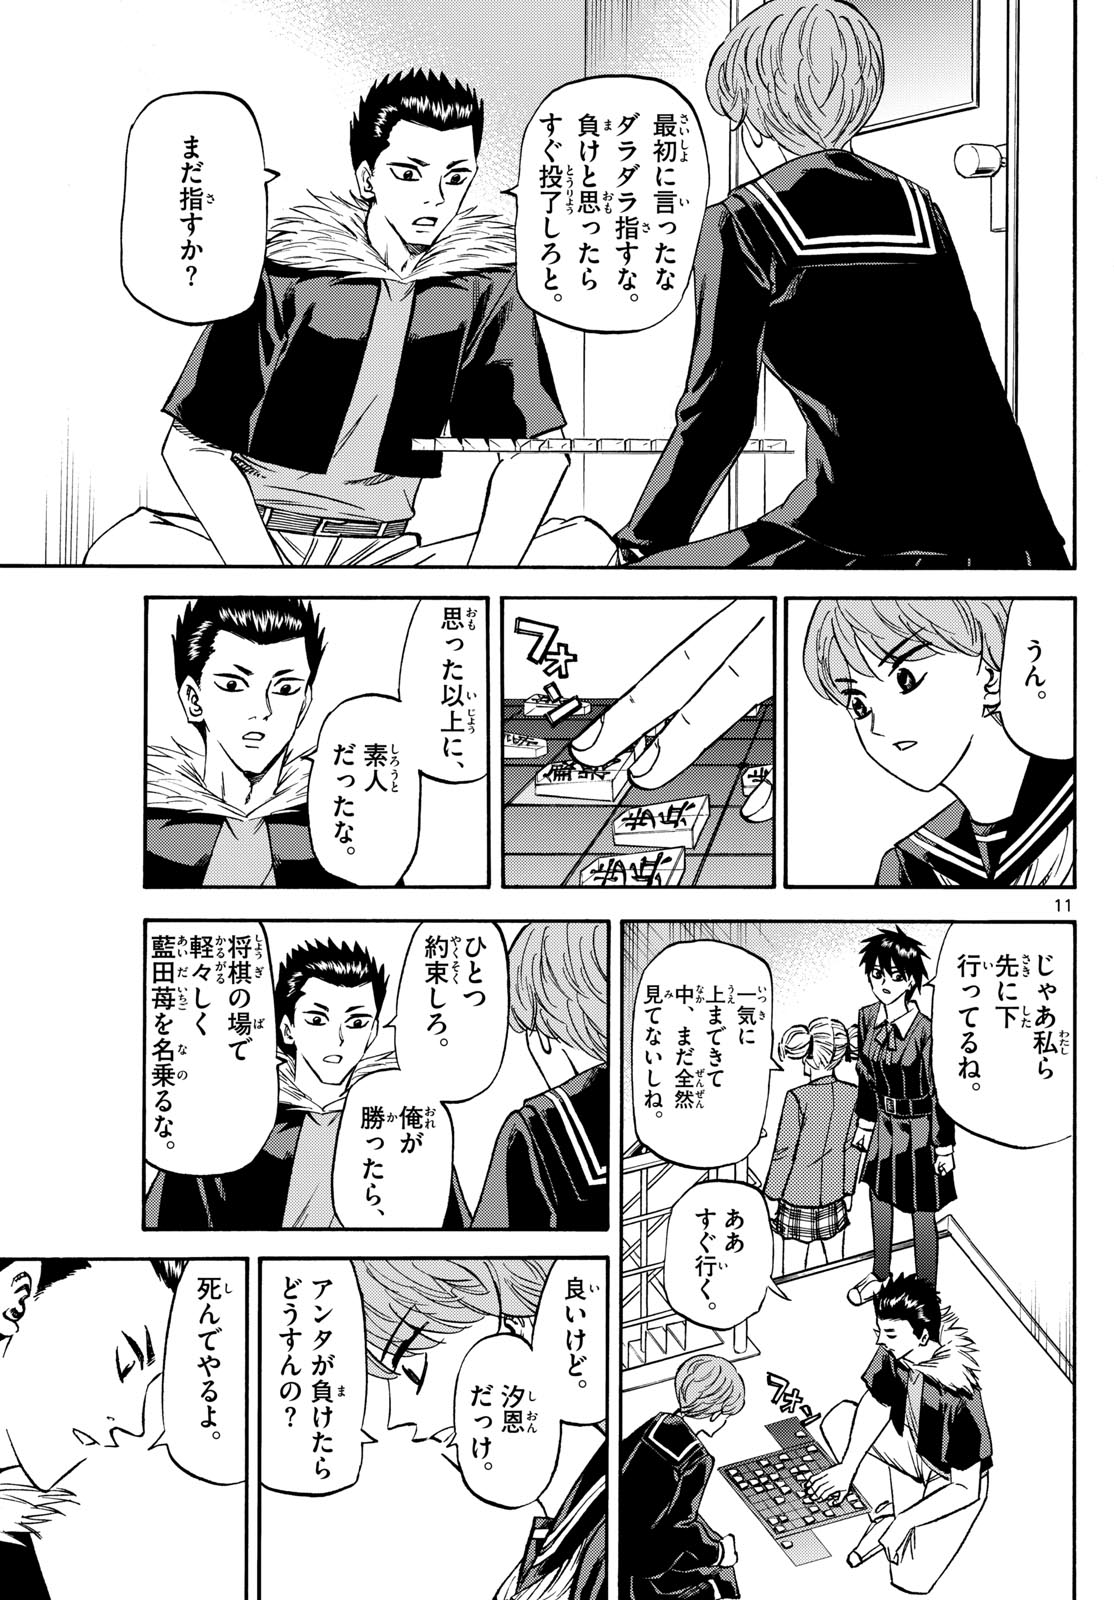 Tatsu to Ichigo - Chapter 183 - Page 11